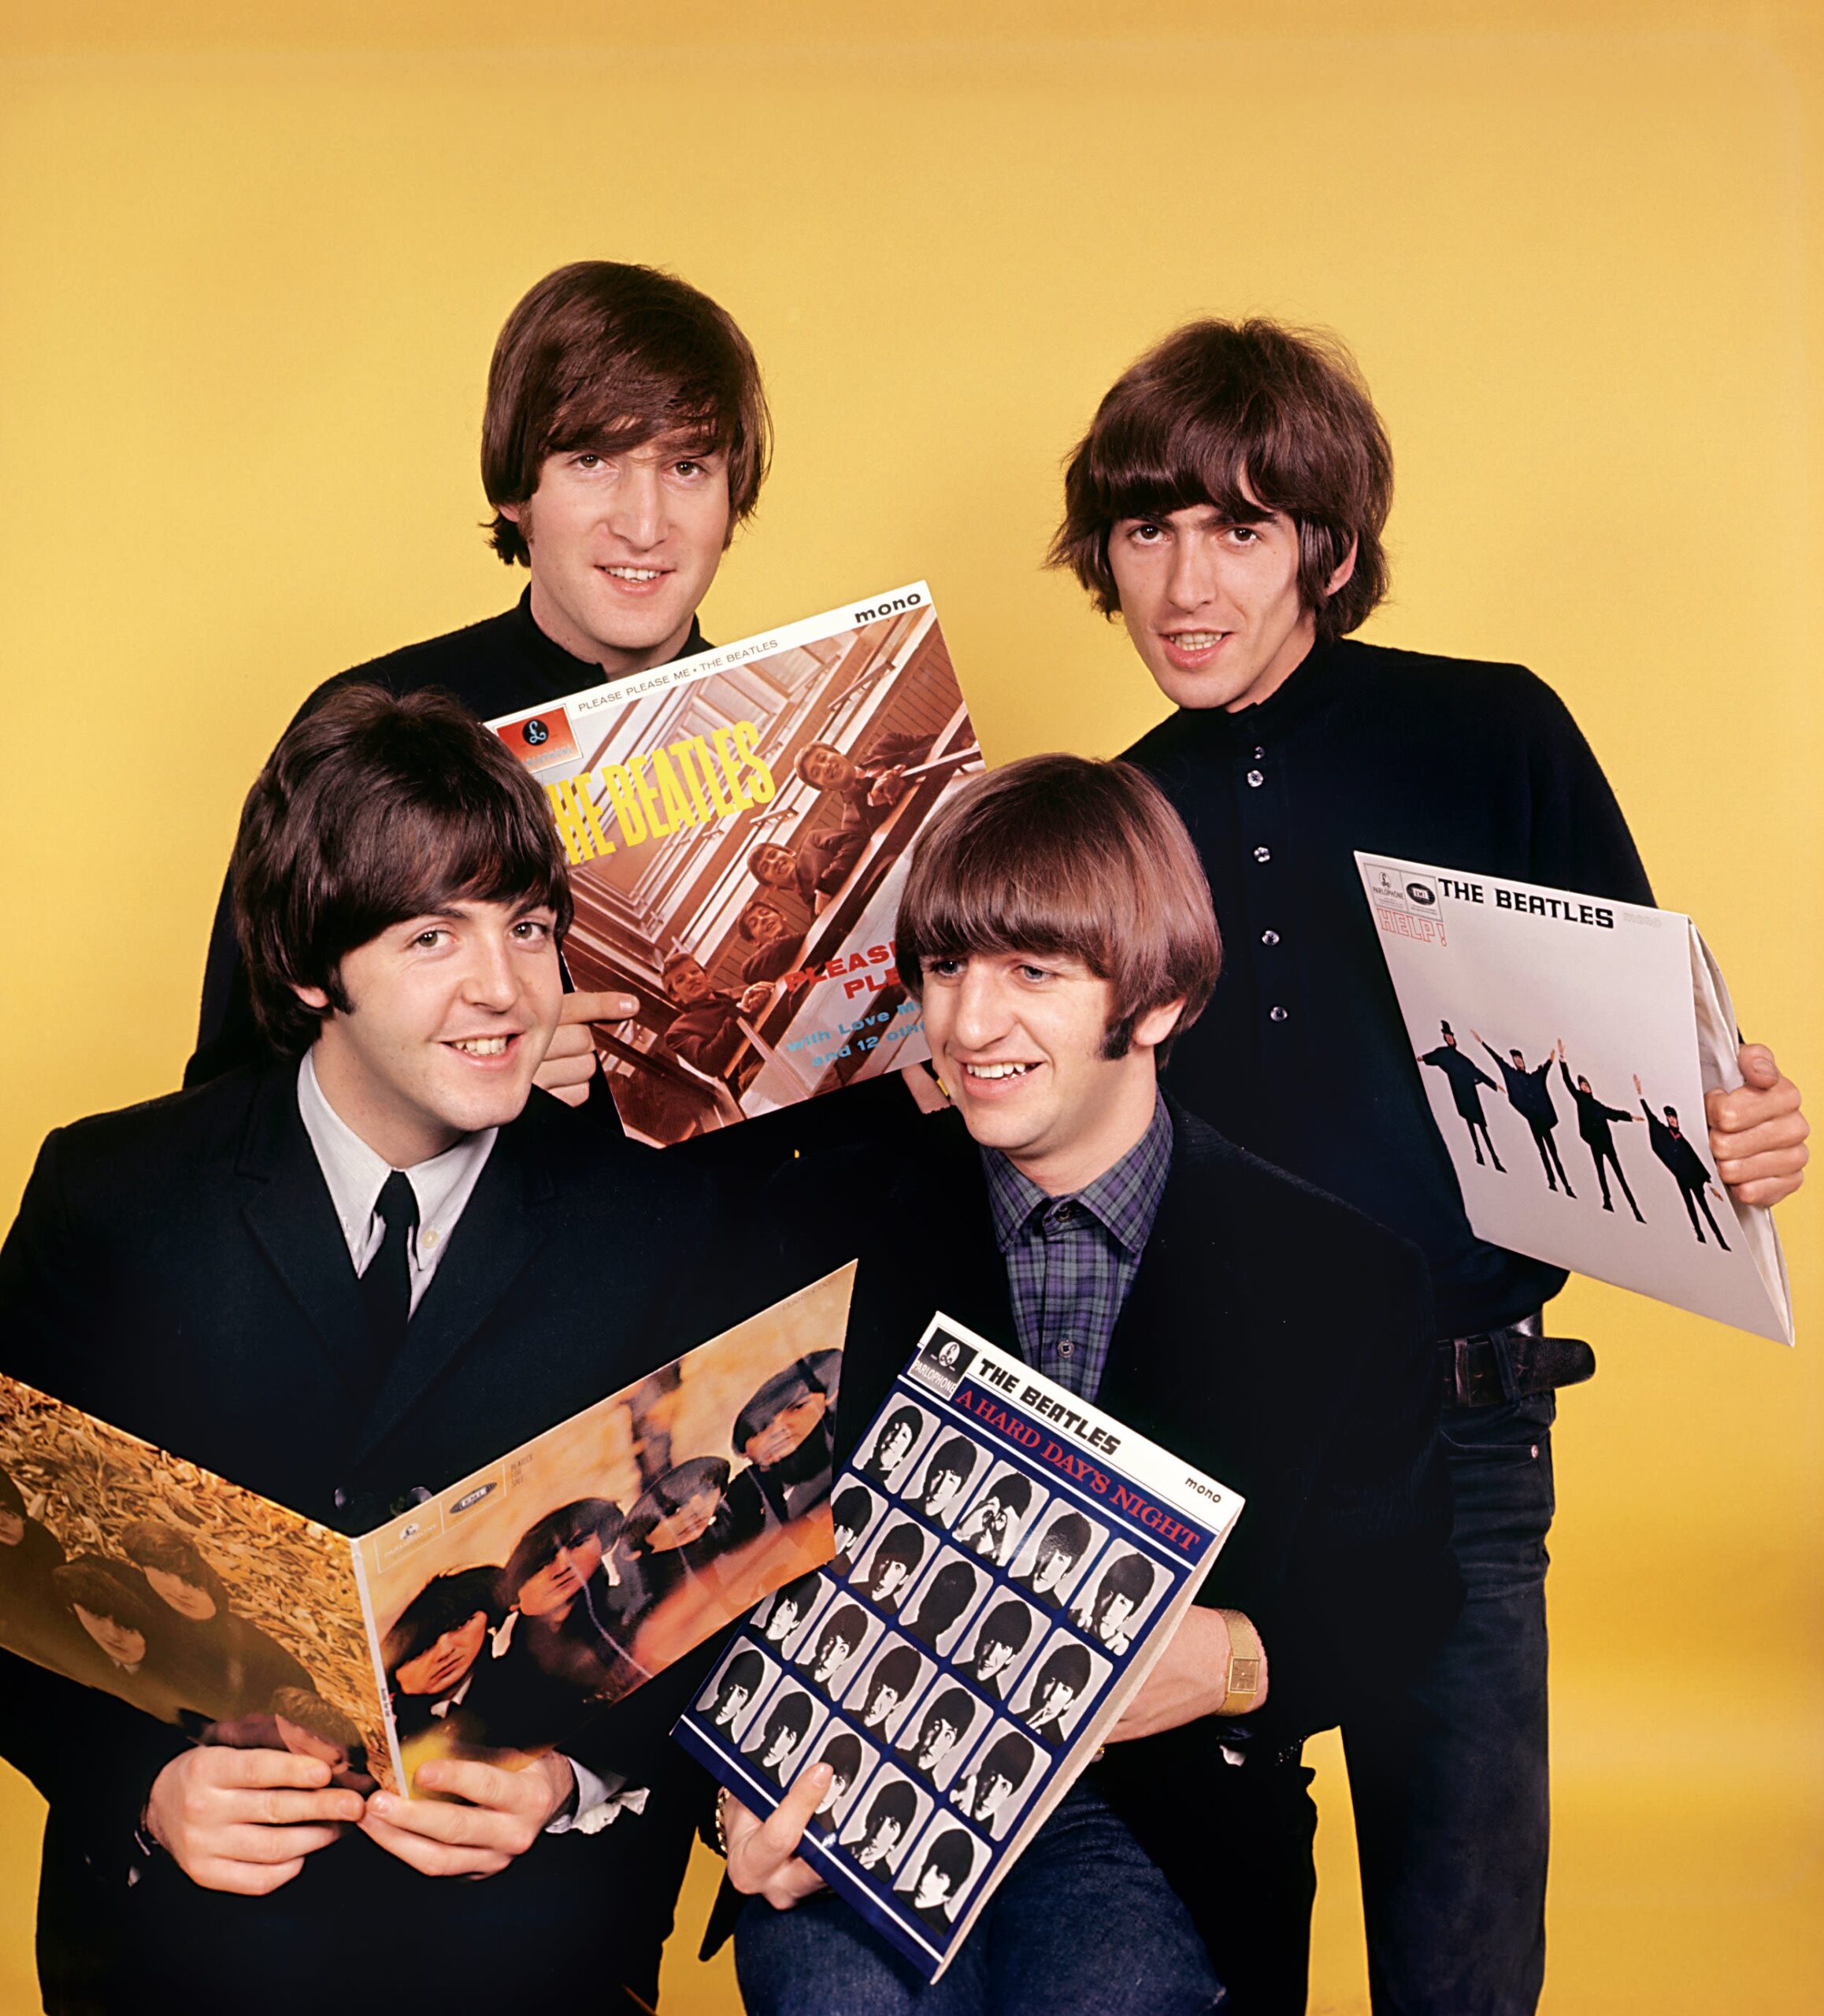 Exhibirán fotos inéditas de los Beatles tomadas por Paul McCartney